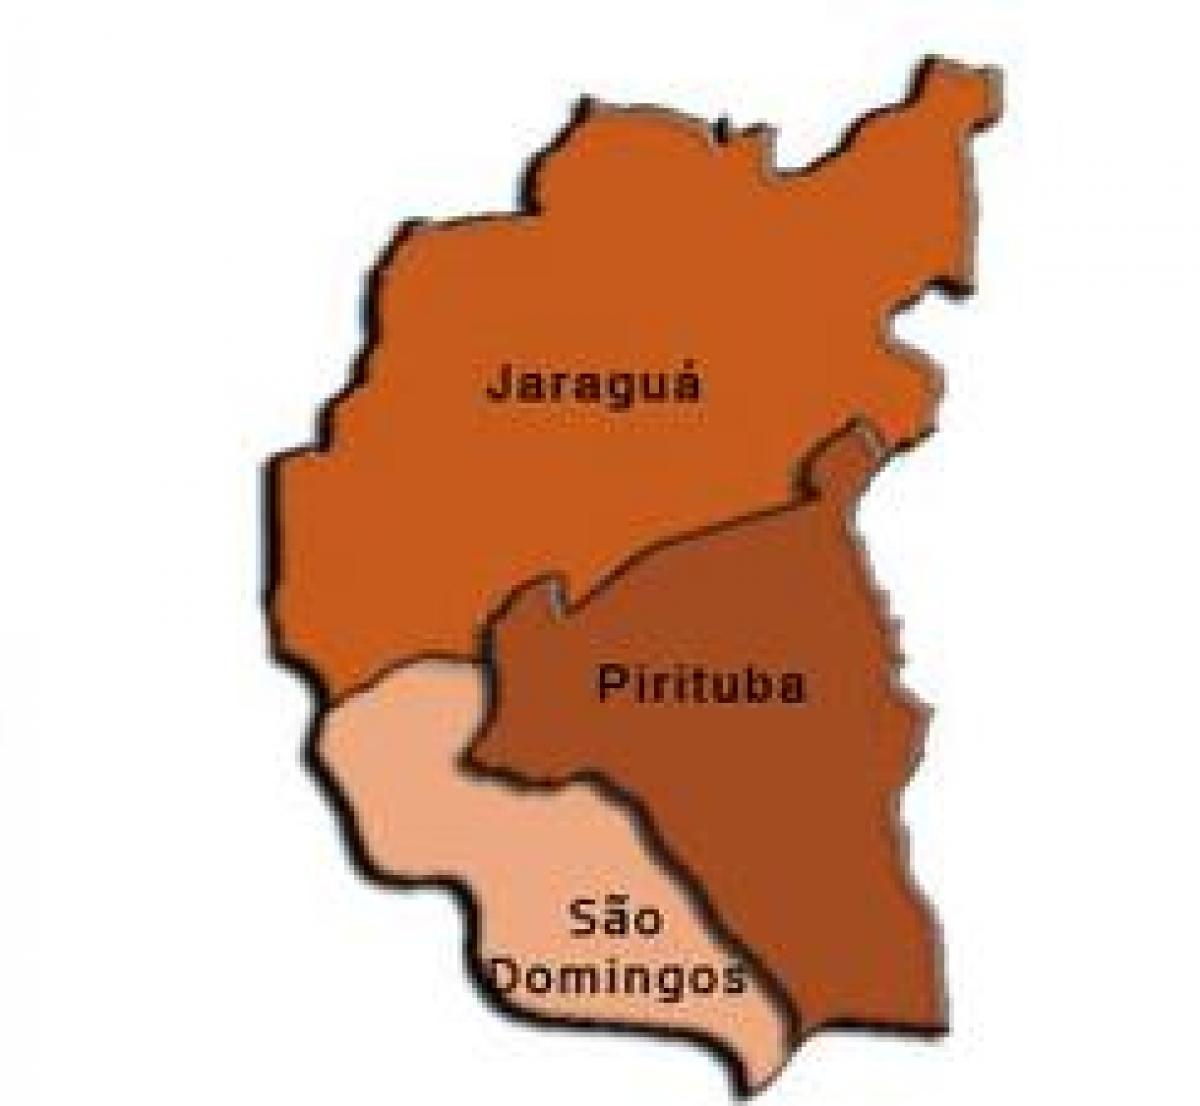 Žemėlapis Pirituba-Jaraguá sub-prefektūros